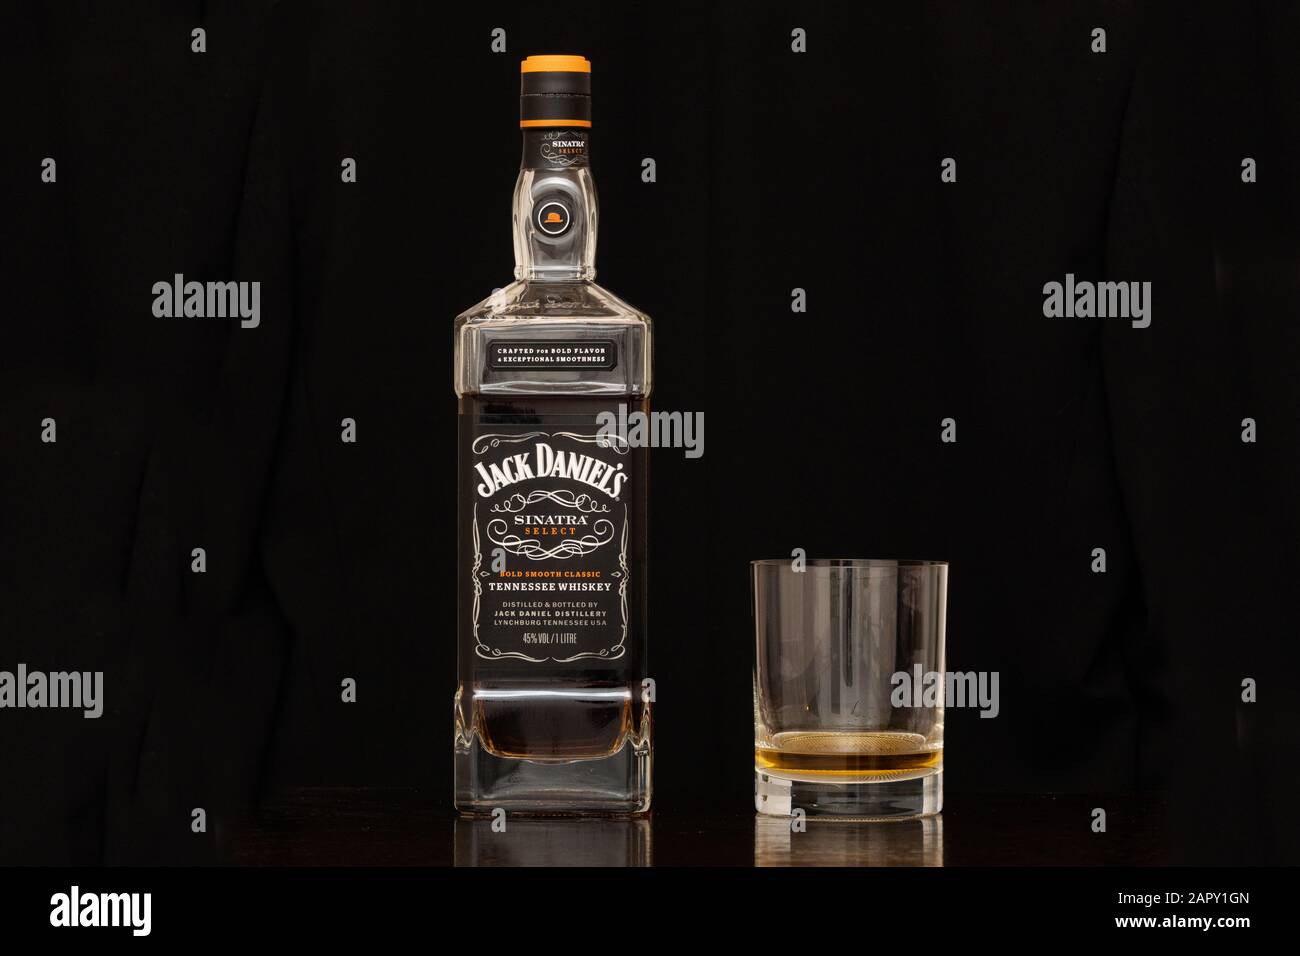 Lynchburg, Tennessee, USA - 12. Januar 2020: Jack Daniels Sinatra Select Tennessee Whiskey in einer Flasche und ein Tumbler Glas auf schwarzem Hintergrund. A Lu Stockfoto